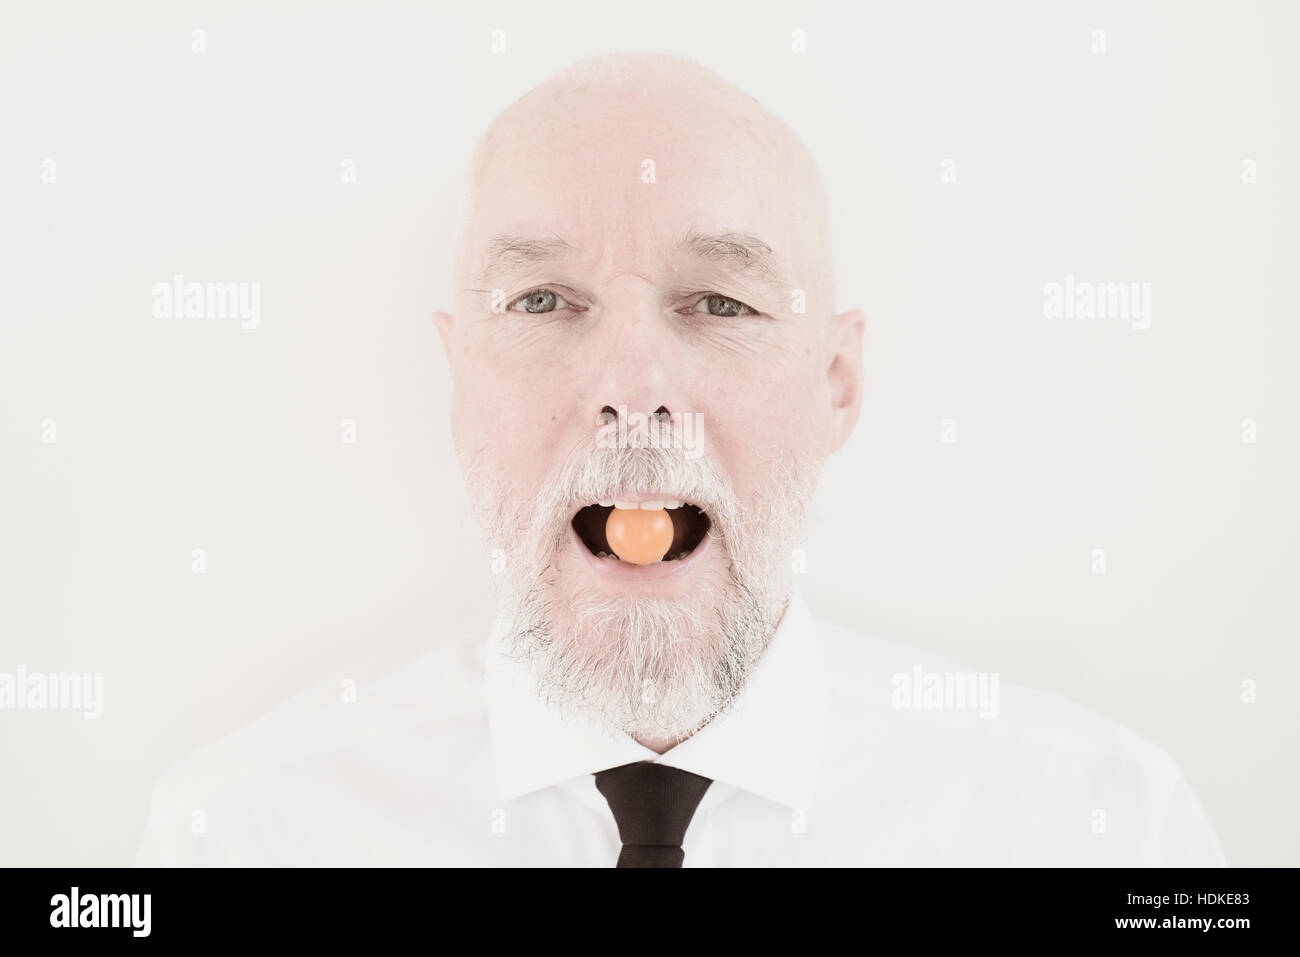 Portrait de vieil homme avec petite tomate dans sa bouche. Drôle et instant ludique. Image conceptuelle d'un mode de vie sain et manger des légumes en tant que senior Banque D'Images